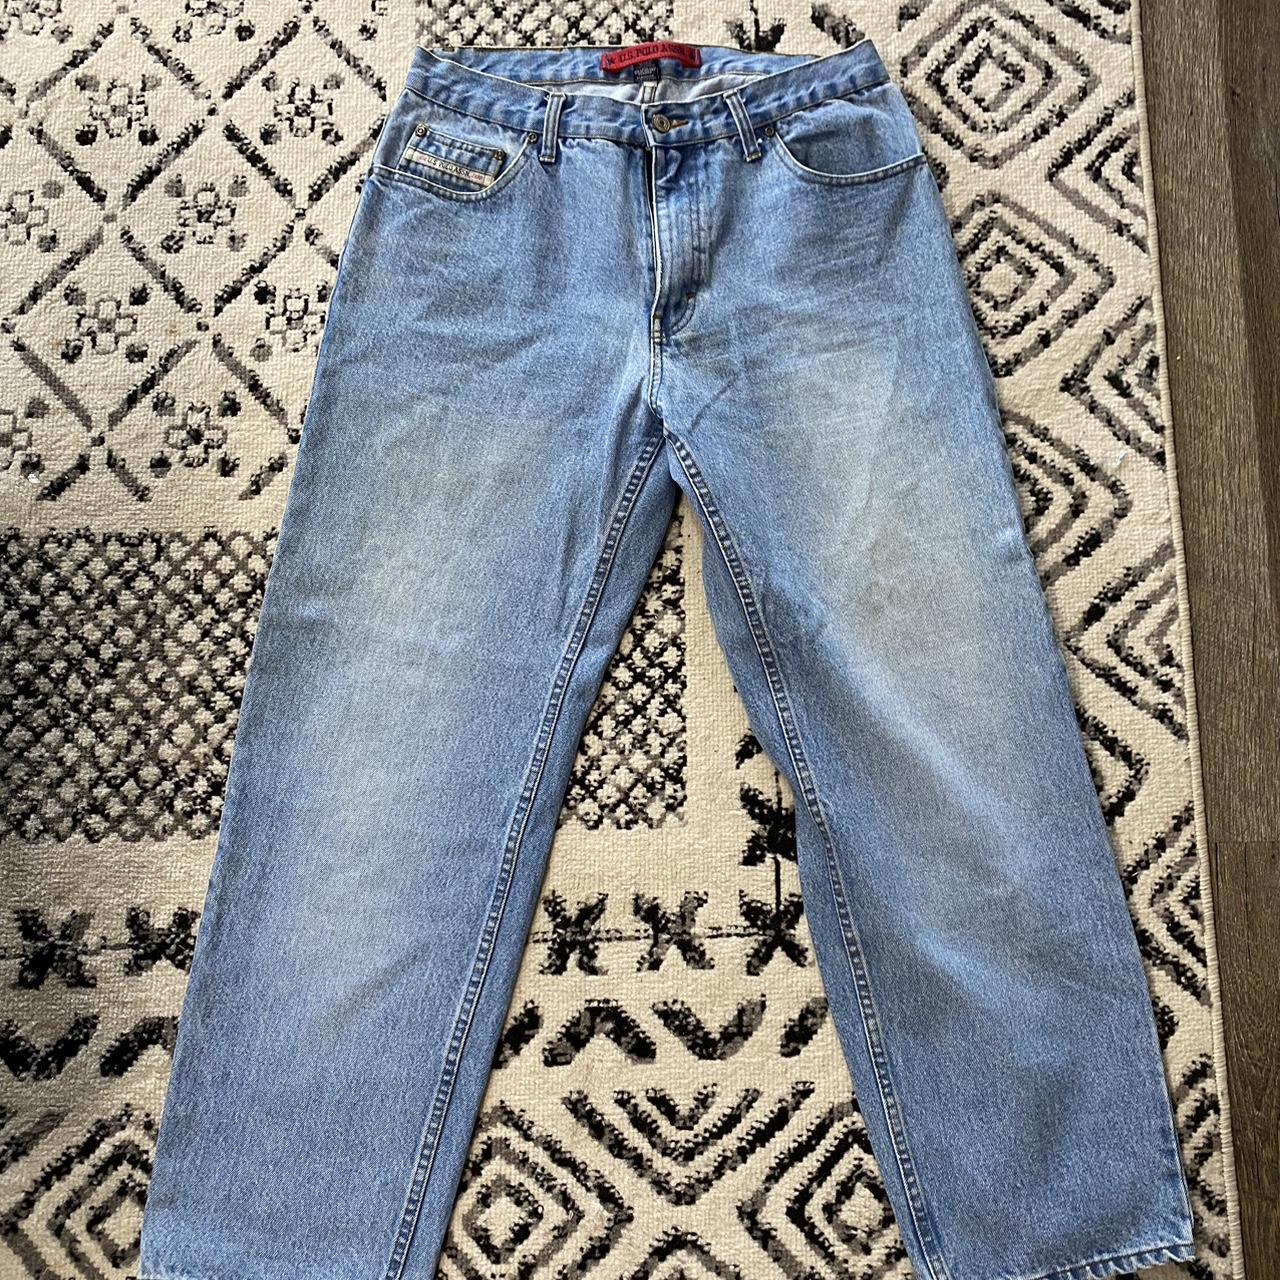 Vintage Polo Assn. jeans 33x30 - Depop